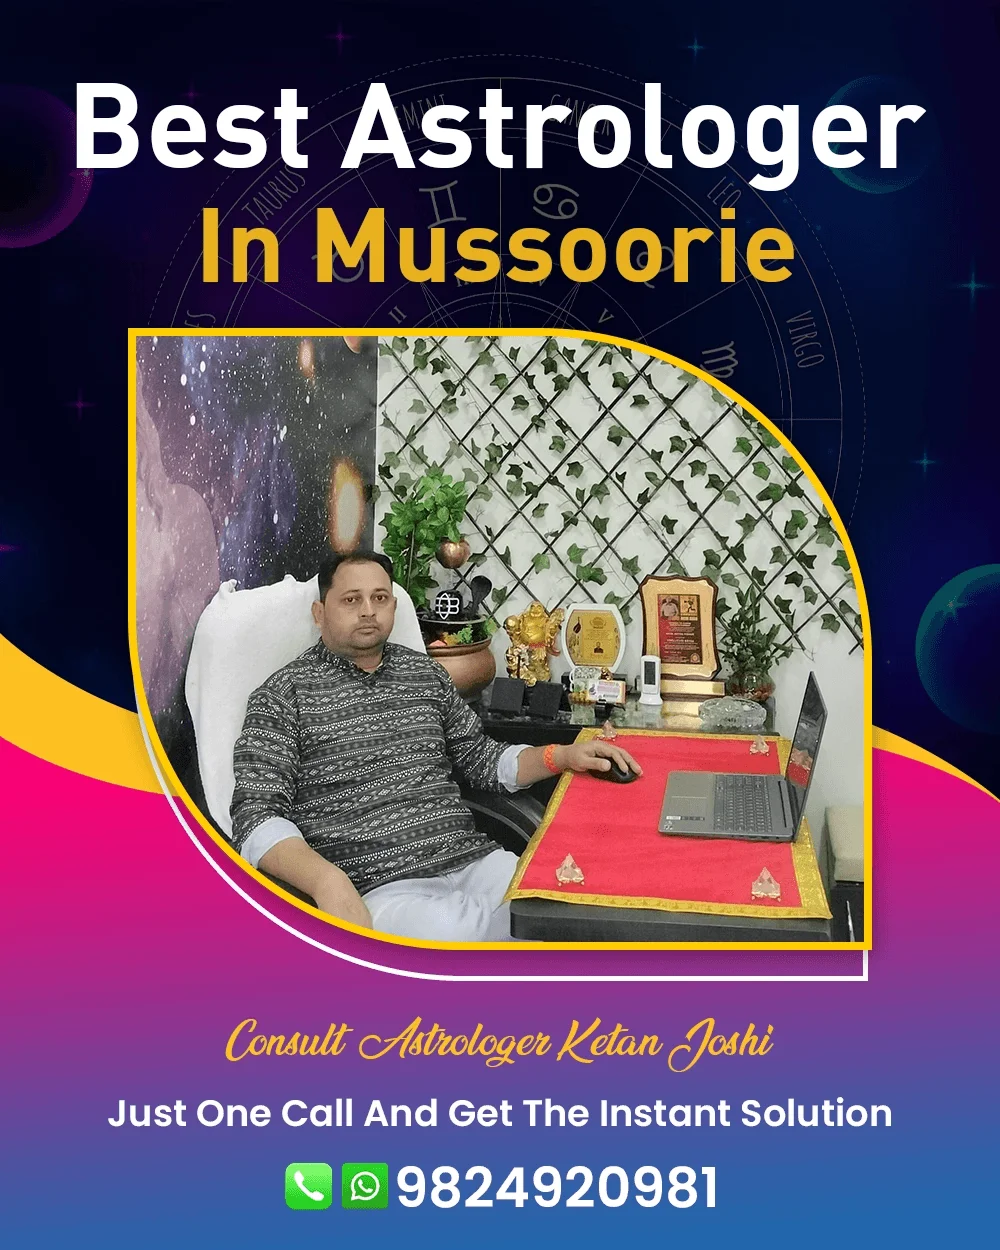 Best Astrologer In Mussoorie